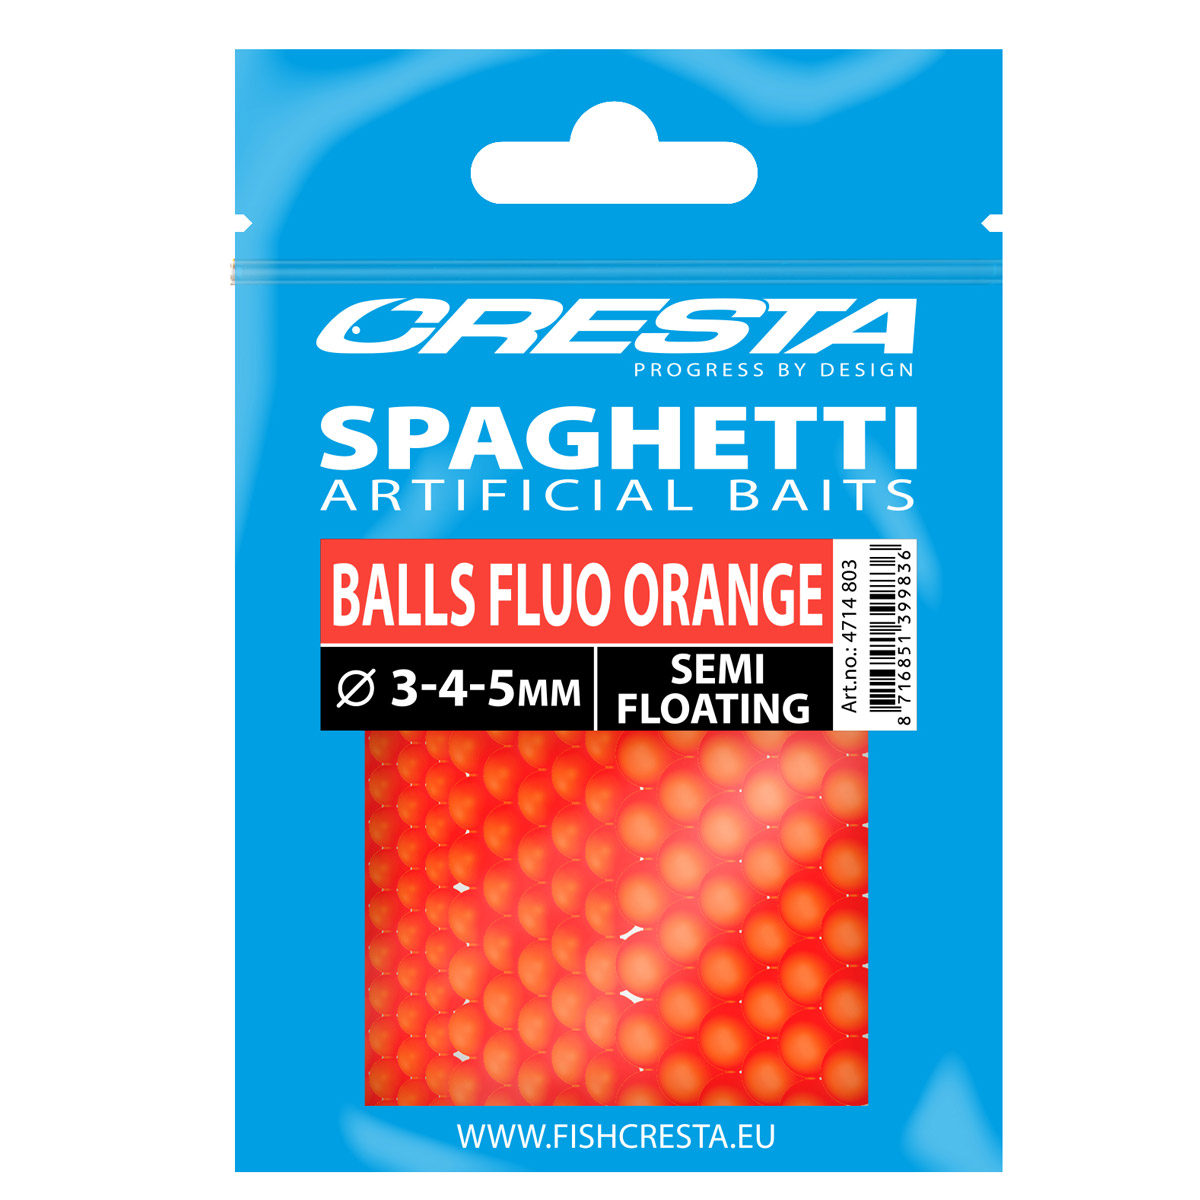 Spro Cresta Spaghetti Balls